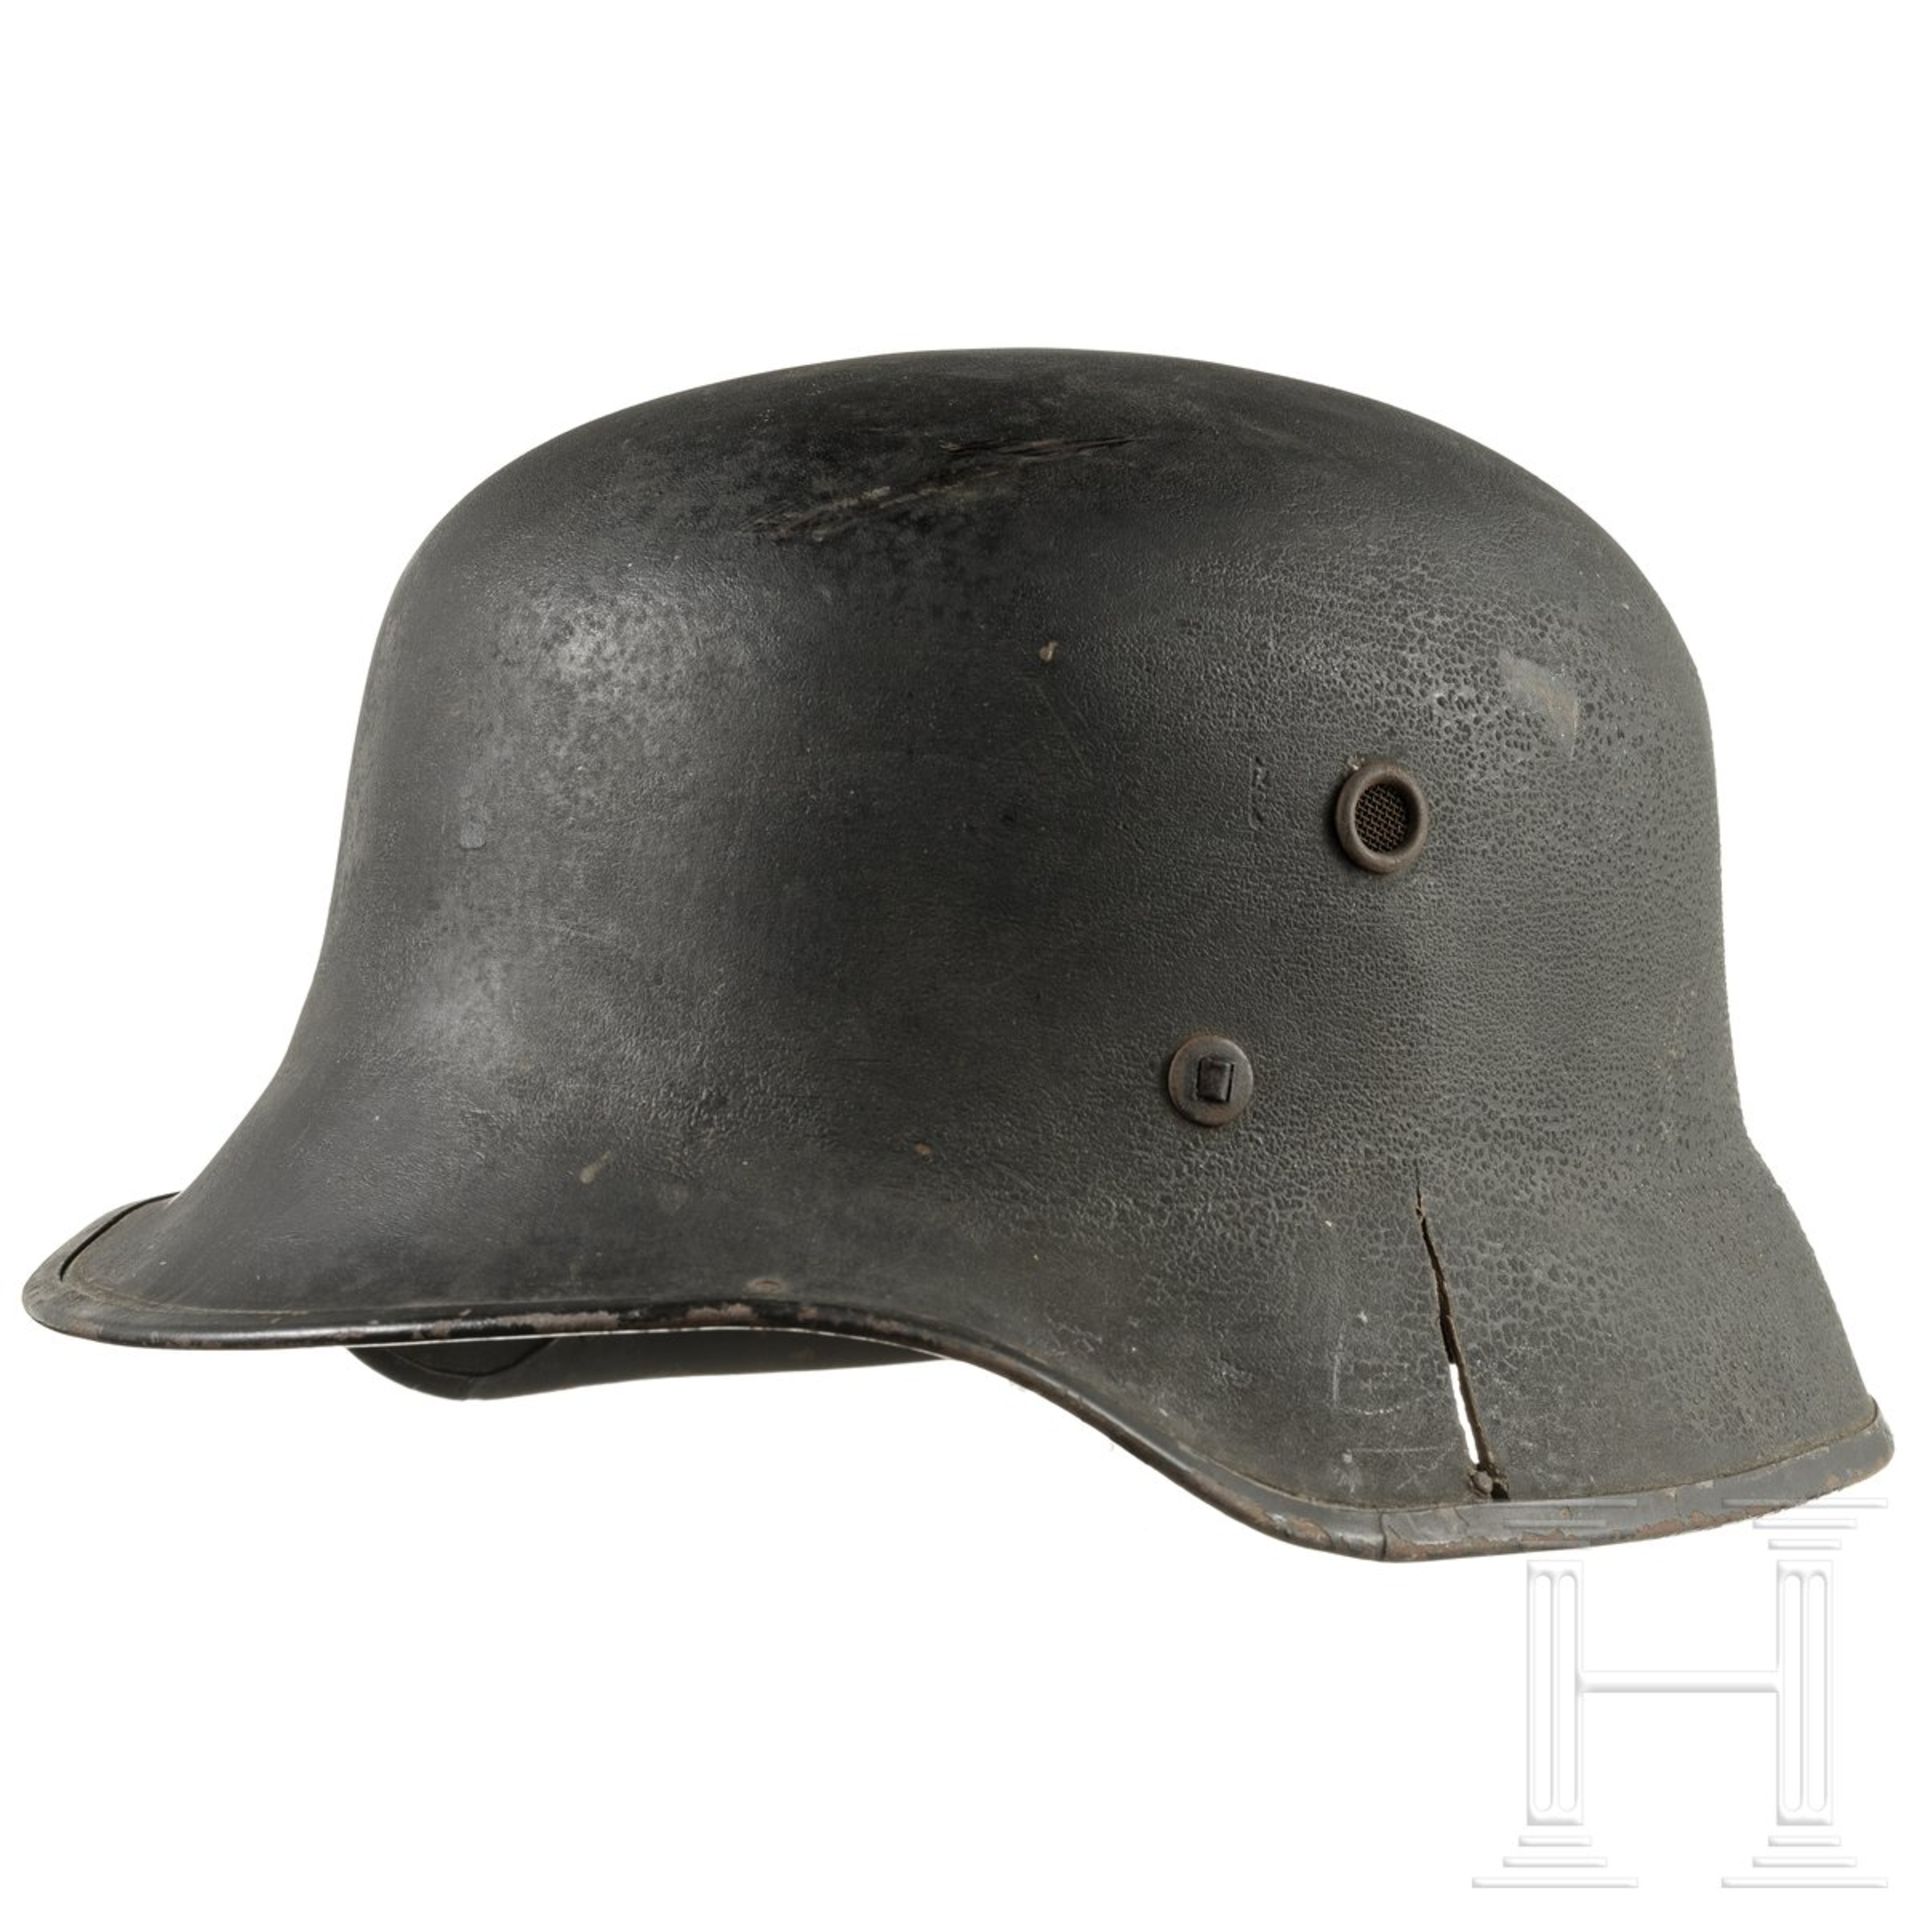 Leichter Helm ähnlich M 35, Deutsches Reich oder DDR, 1940er Jahre